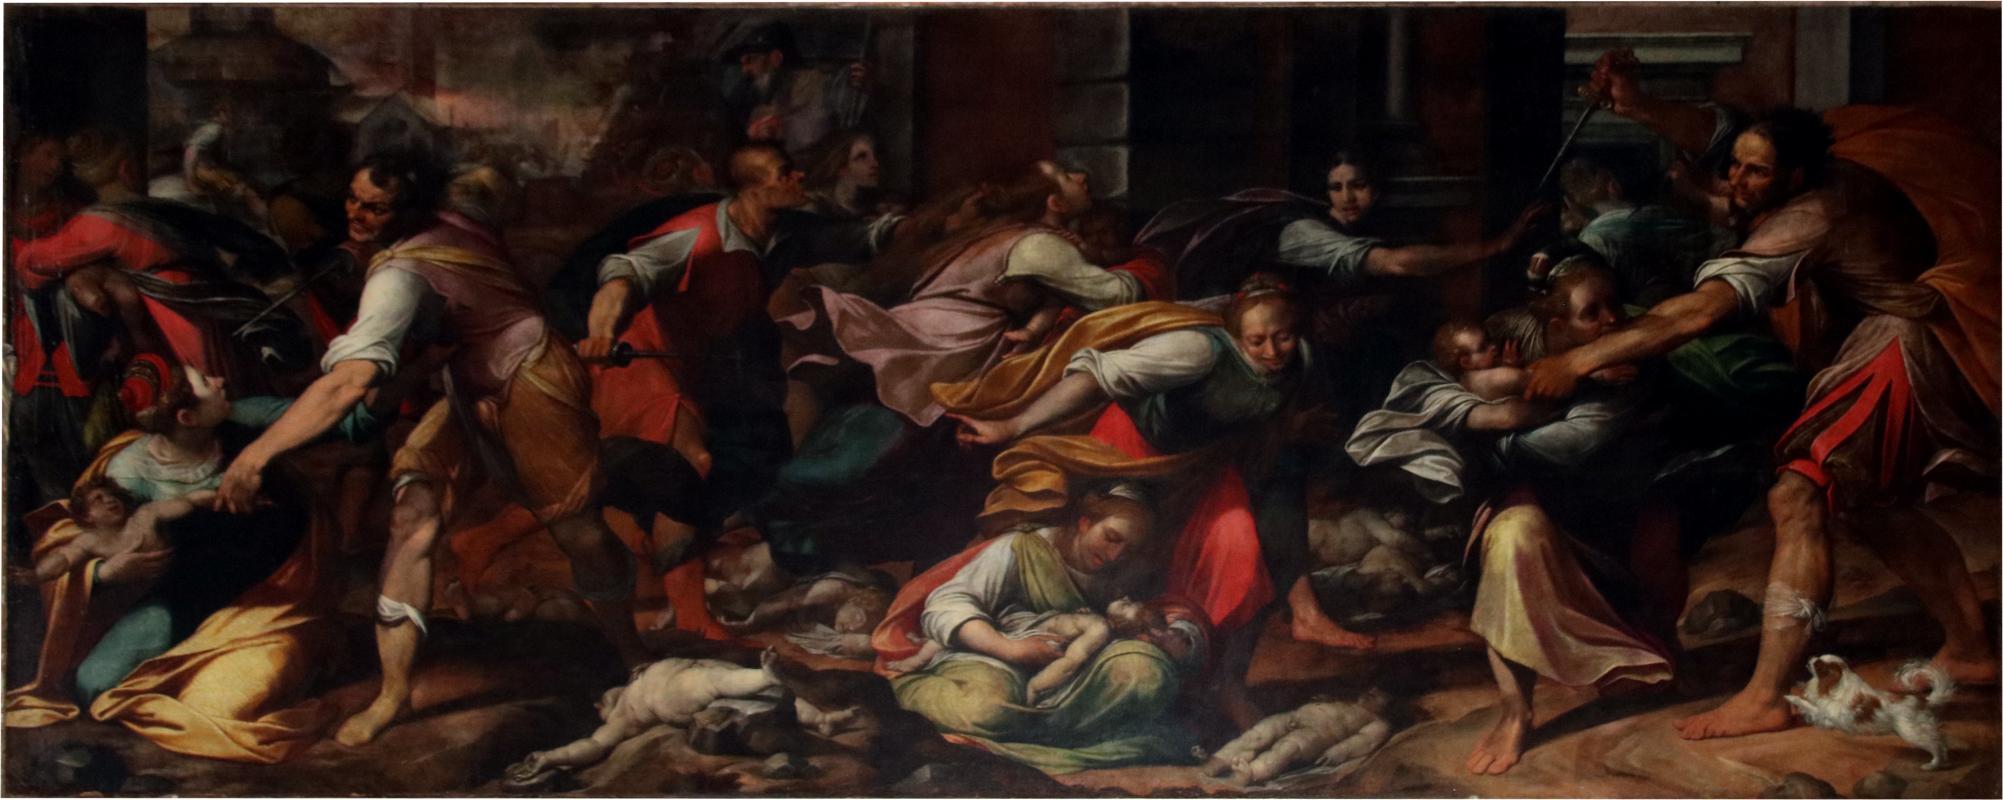 Camillo Procaccini, Strage degli Innocenti (1603) 01 - Mongolo1984